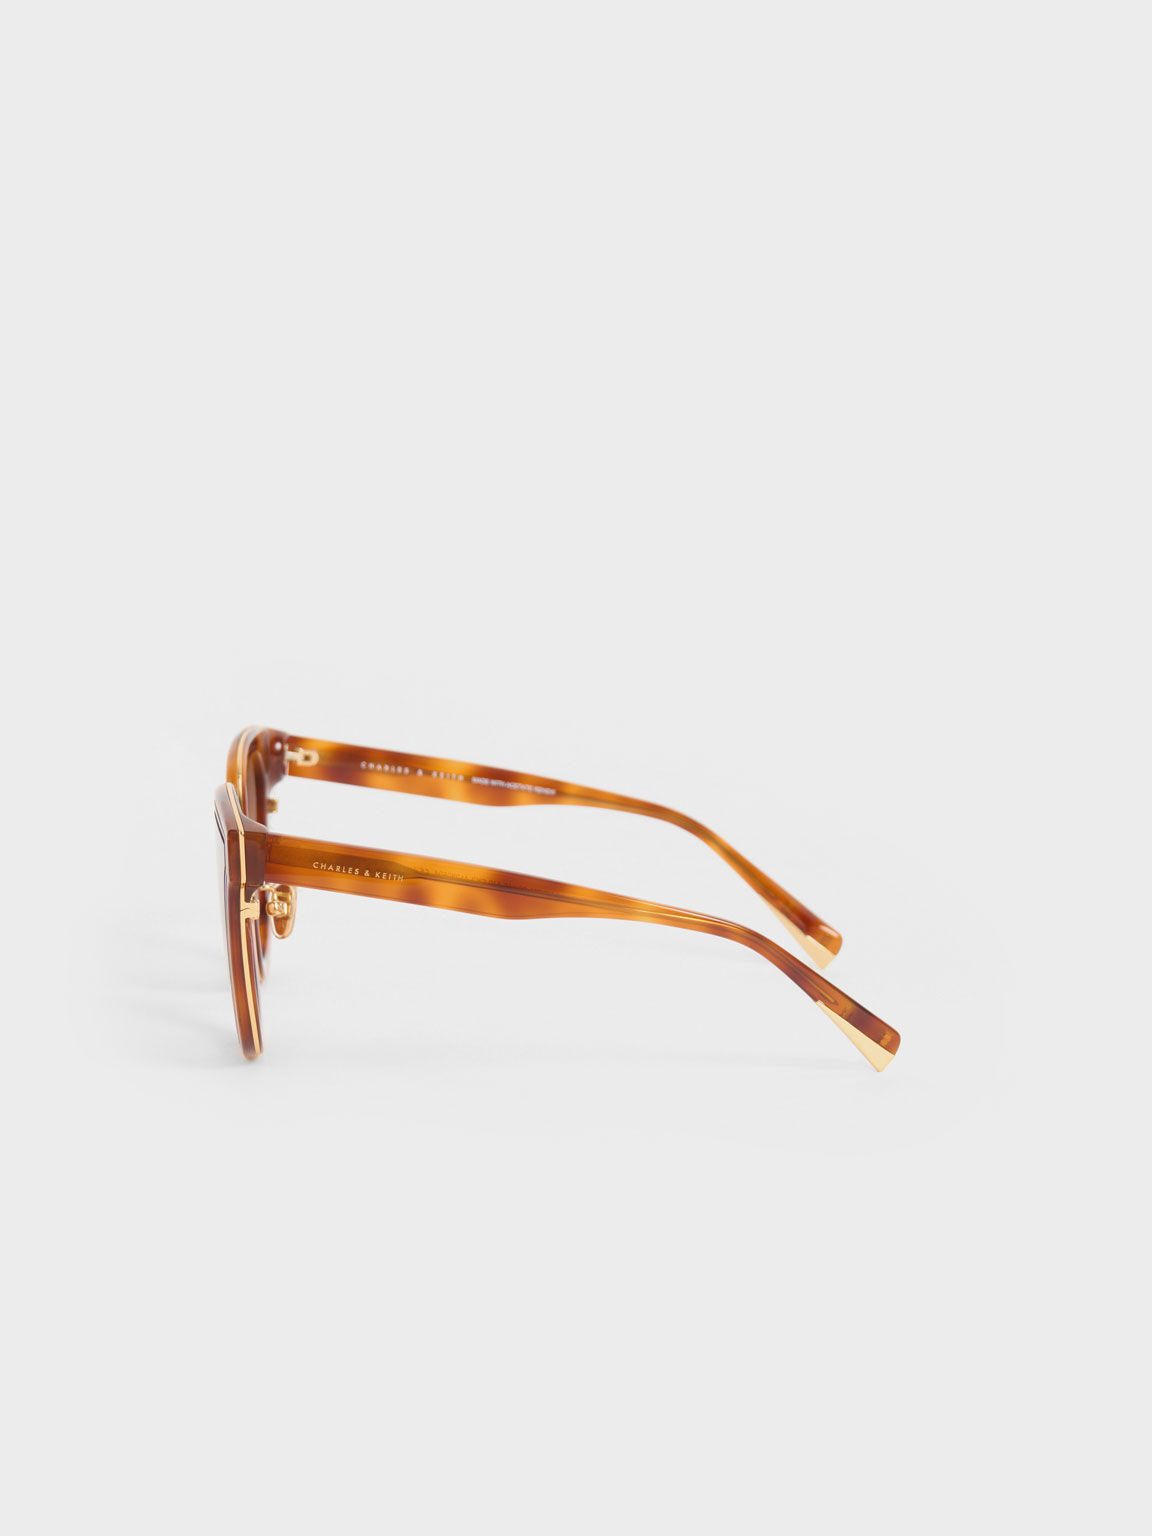 Kacamata Gold-Trim Rectangular, T. Shell, hi-res